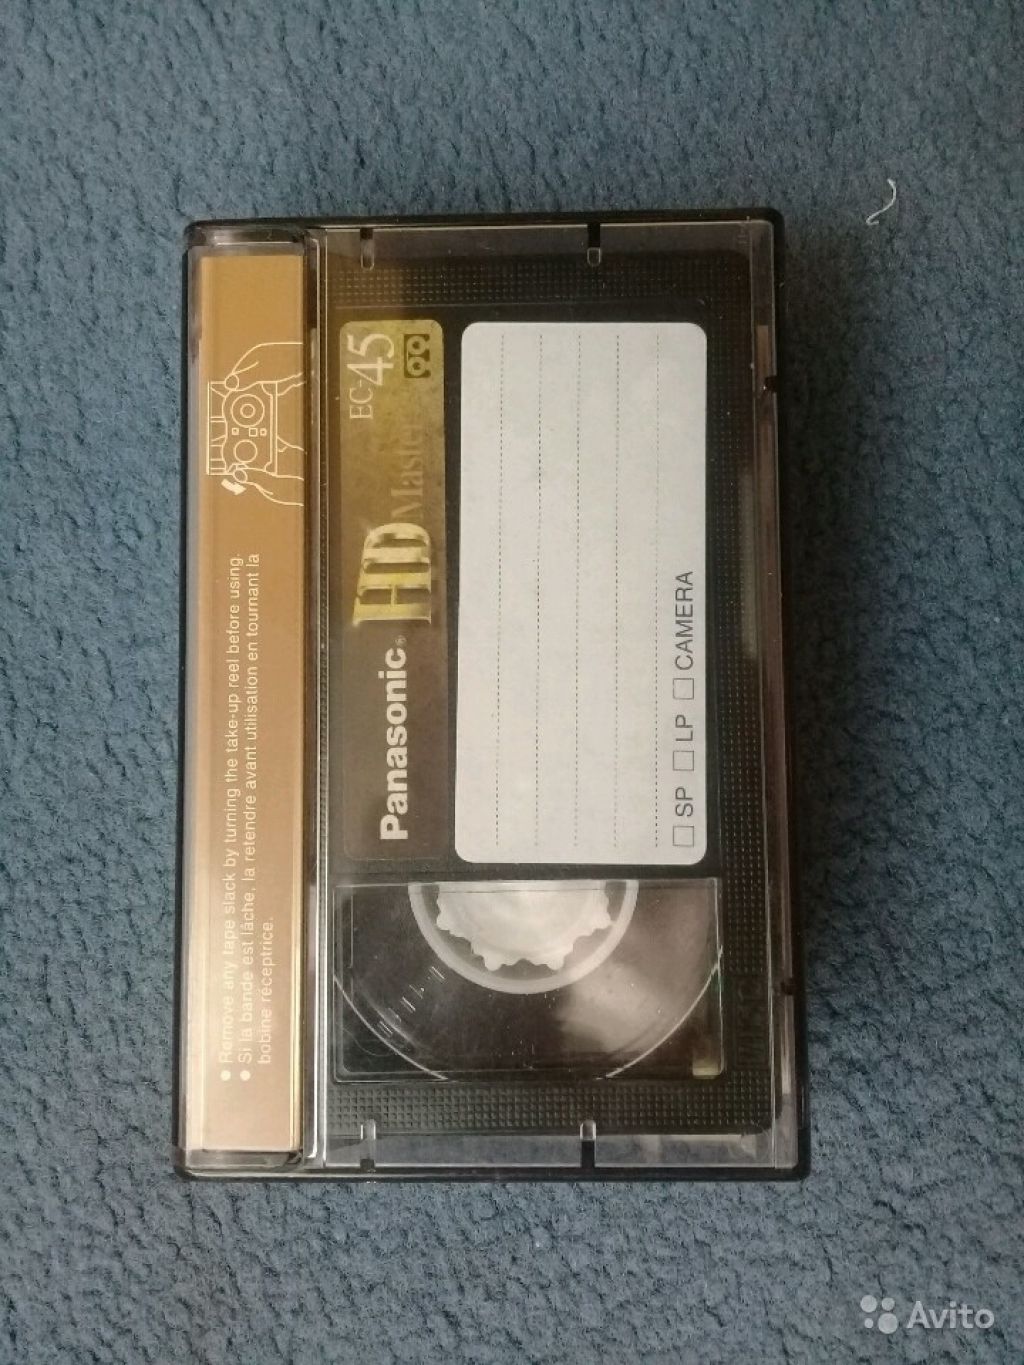 Кассета панасоник. Кассета ec45hs. EC-45 кассета. Panasonic HD Extra EC-45 VHS C. Видеокассета Панасоник SP EC-45.